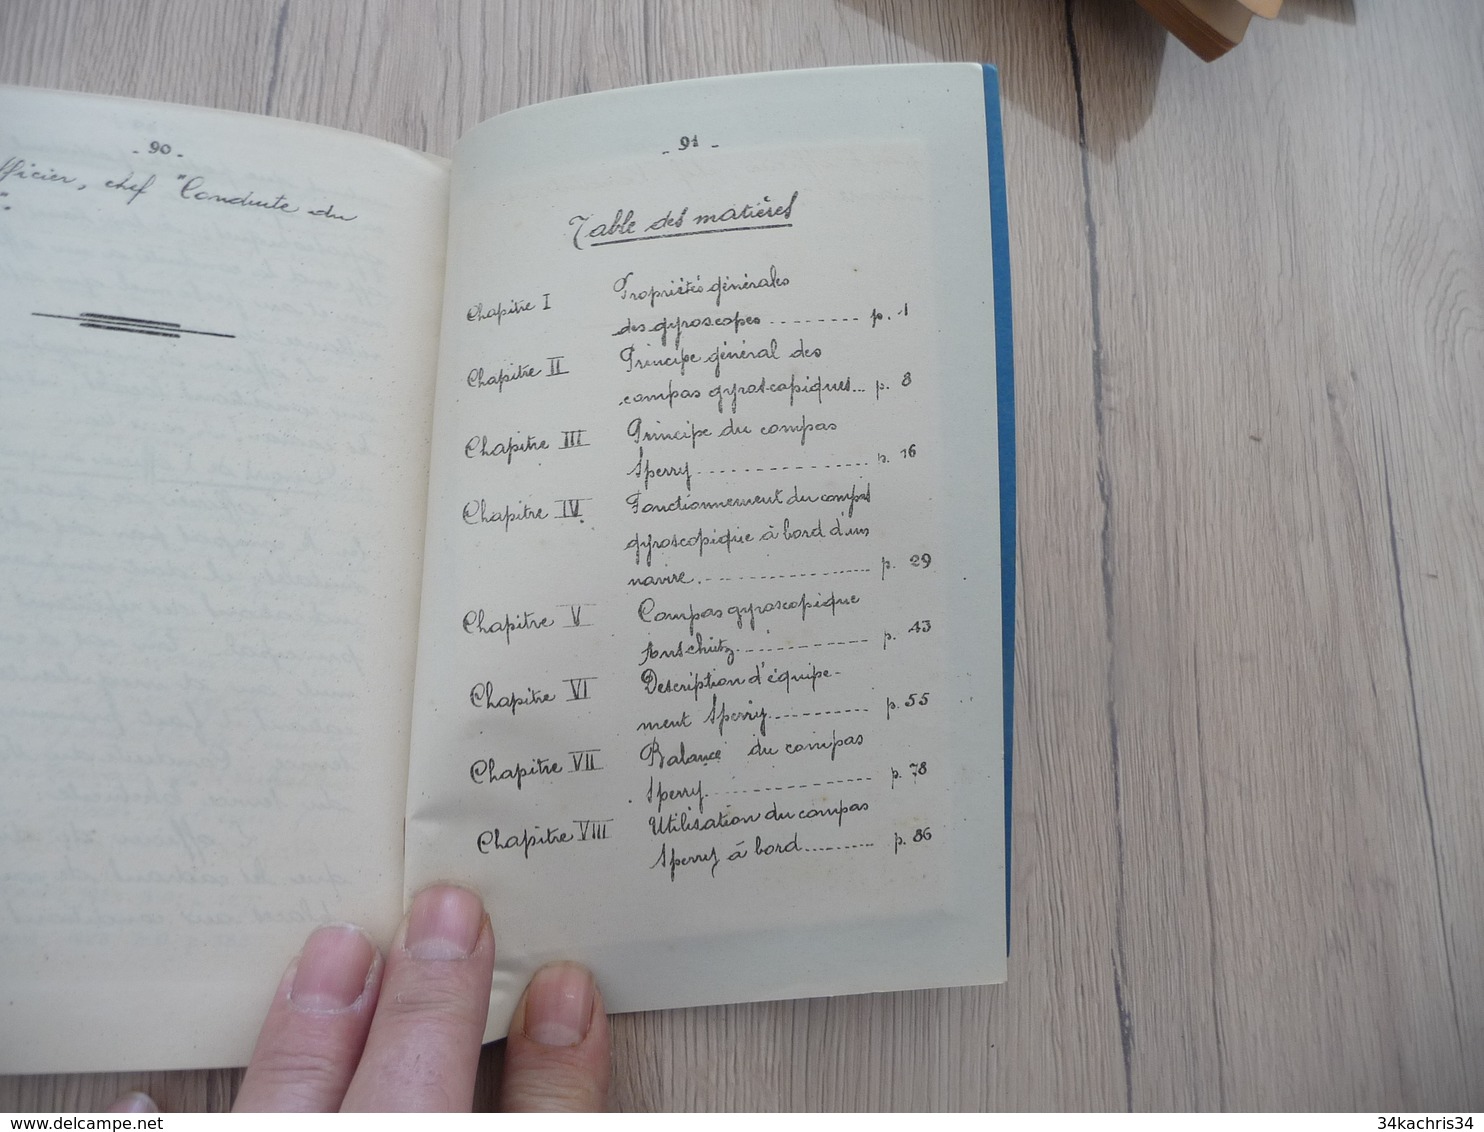 1930 Livret Notes sur les compas Gyroscopique 91 pages texte dessins et planche